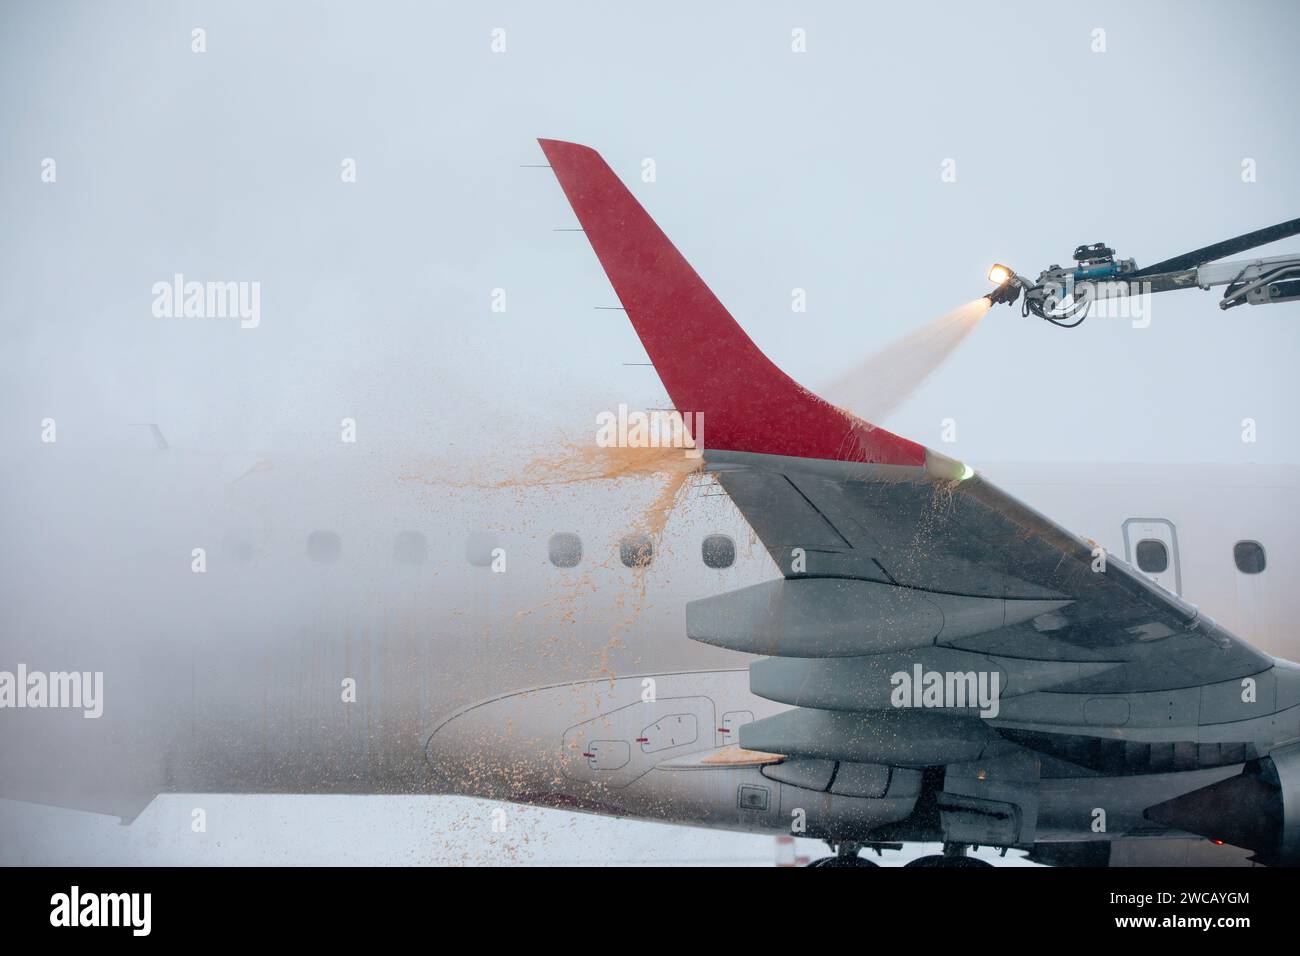 Dégivrage de l'aile d'avion avant le vol. Hiver jour glacial et service au sol à l'aéroport pendant les chutes de neige. Banque D'Images